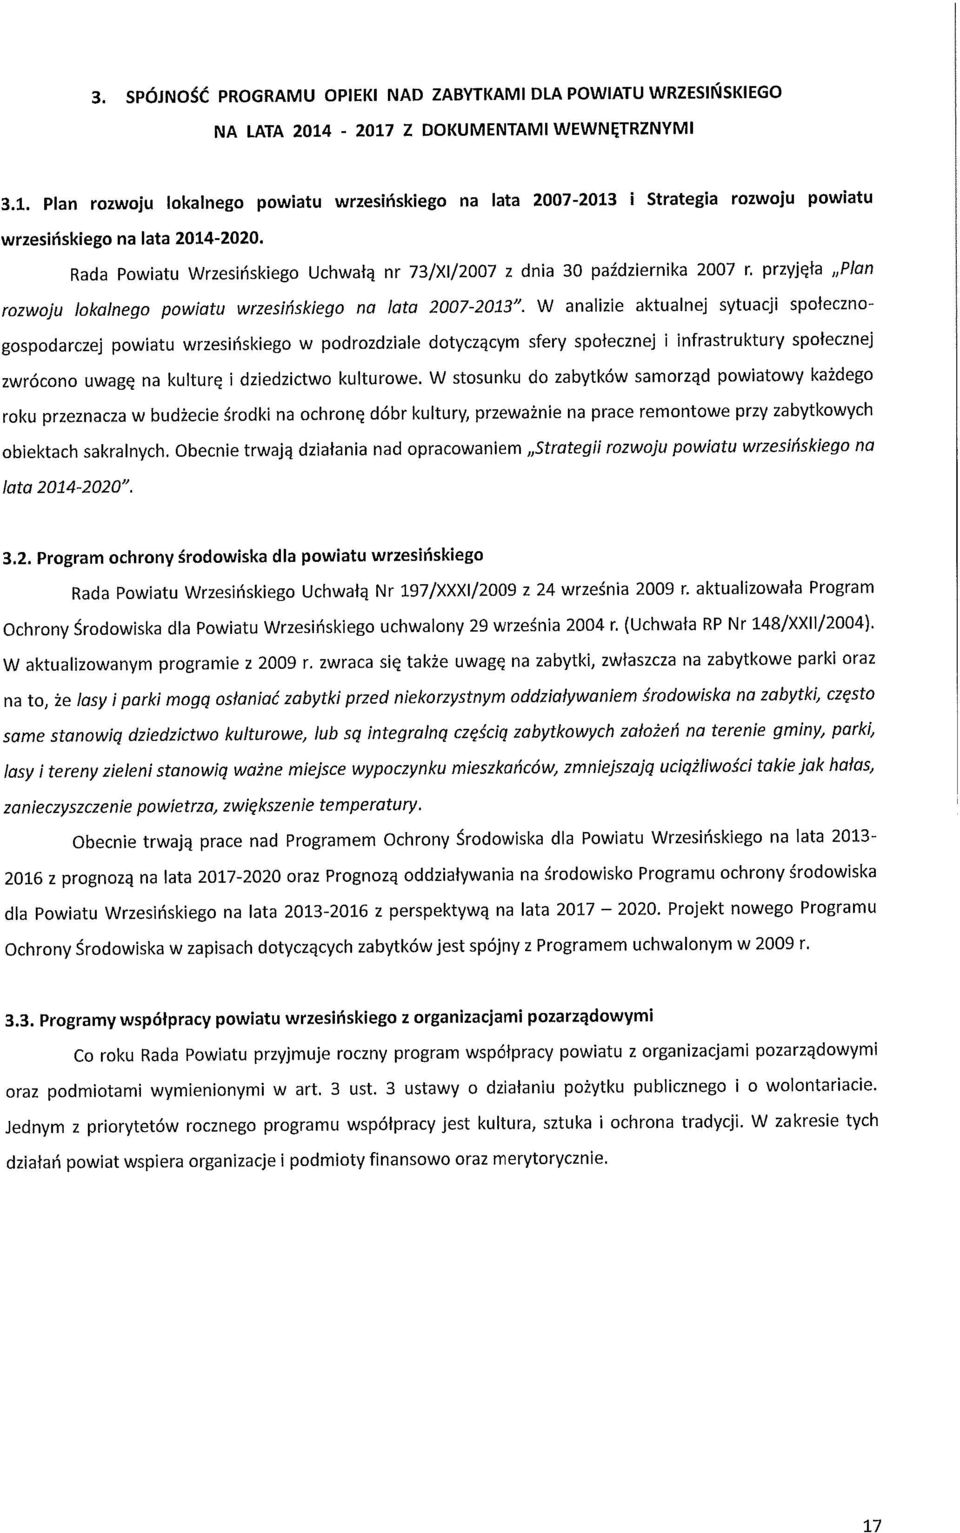 Rada Powiatu Wrzesińskiego Uchwałą nr 73/XI/2007 z dnia 30 października 2007 r. przyjęła Plan rozwoju lokalnego powiatu wrzesińskiego na lata 2007-2013".